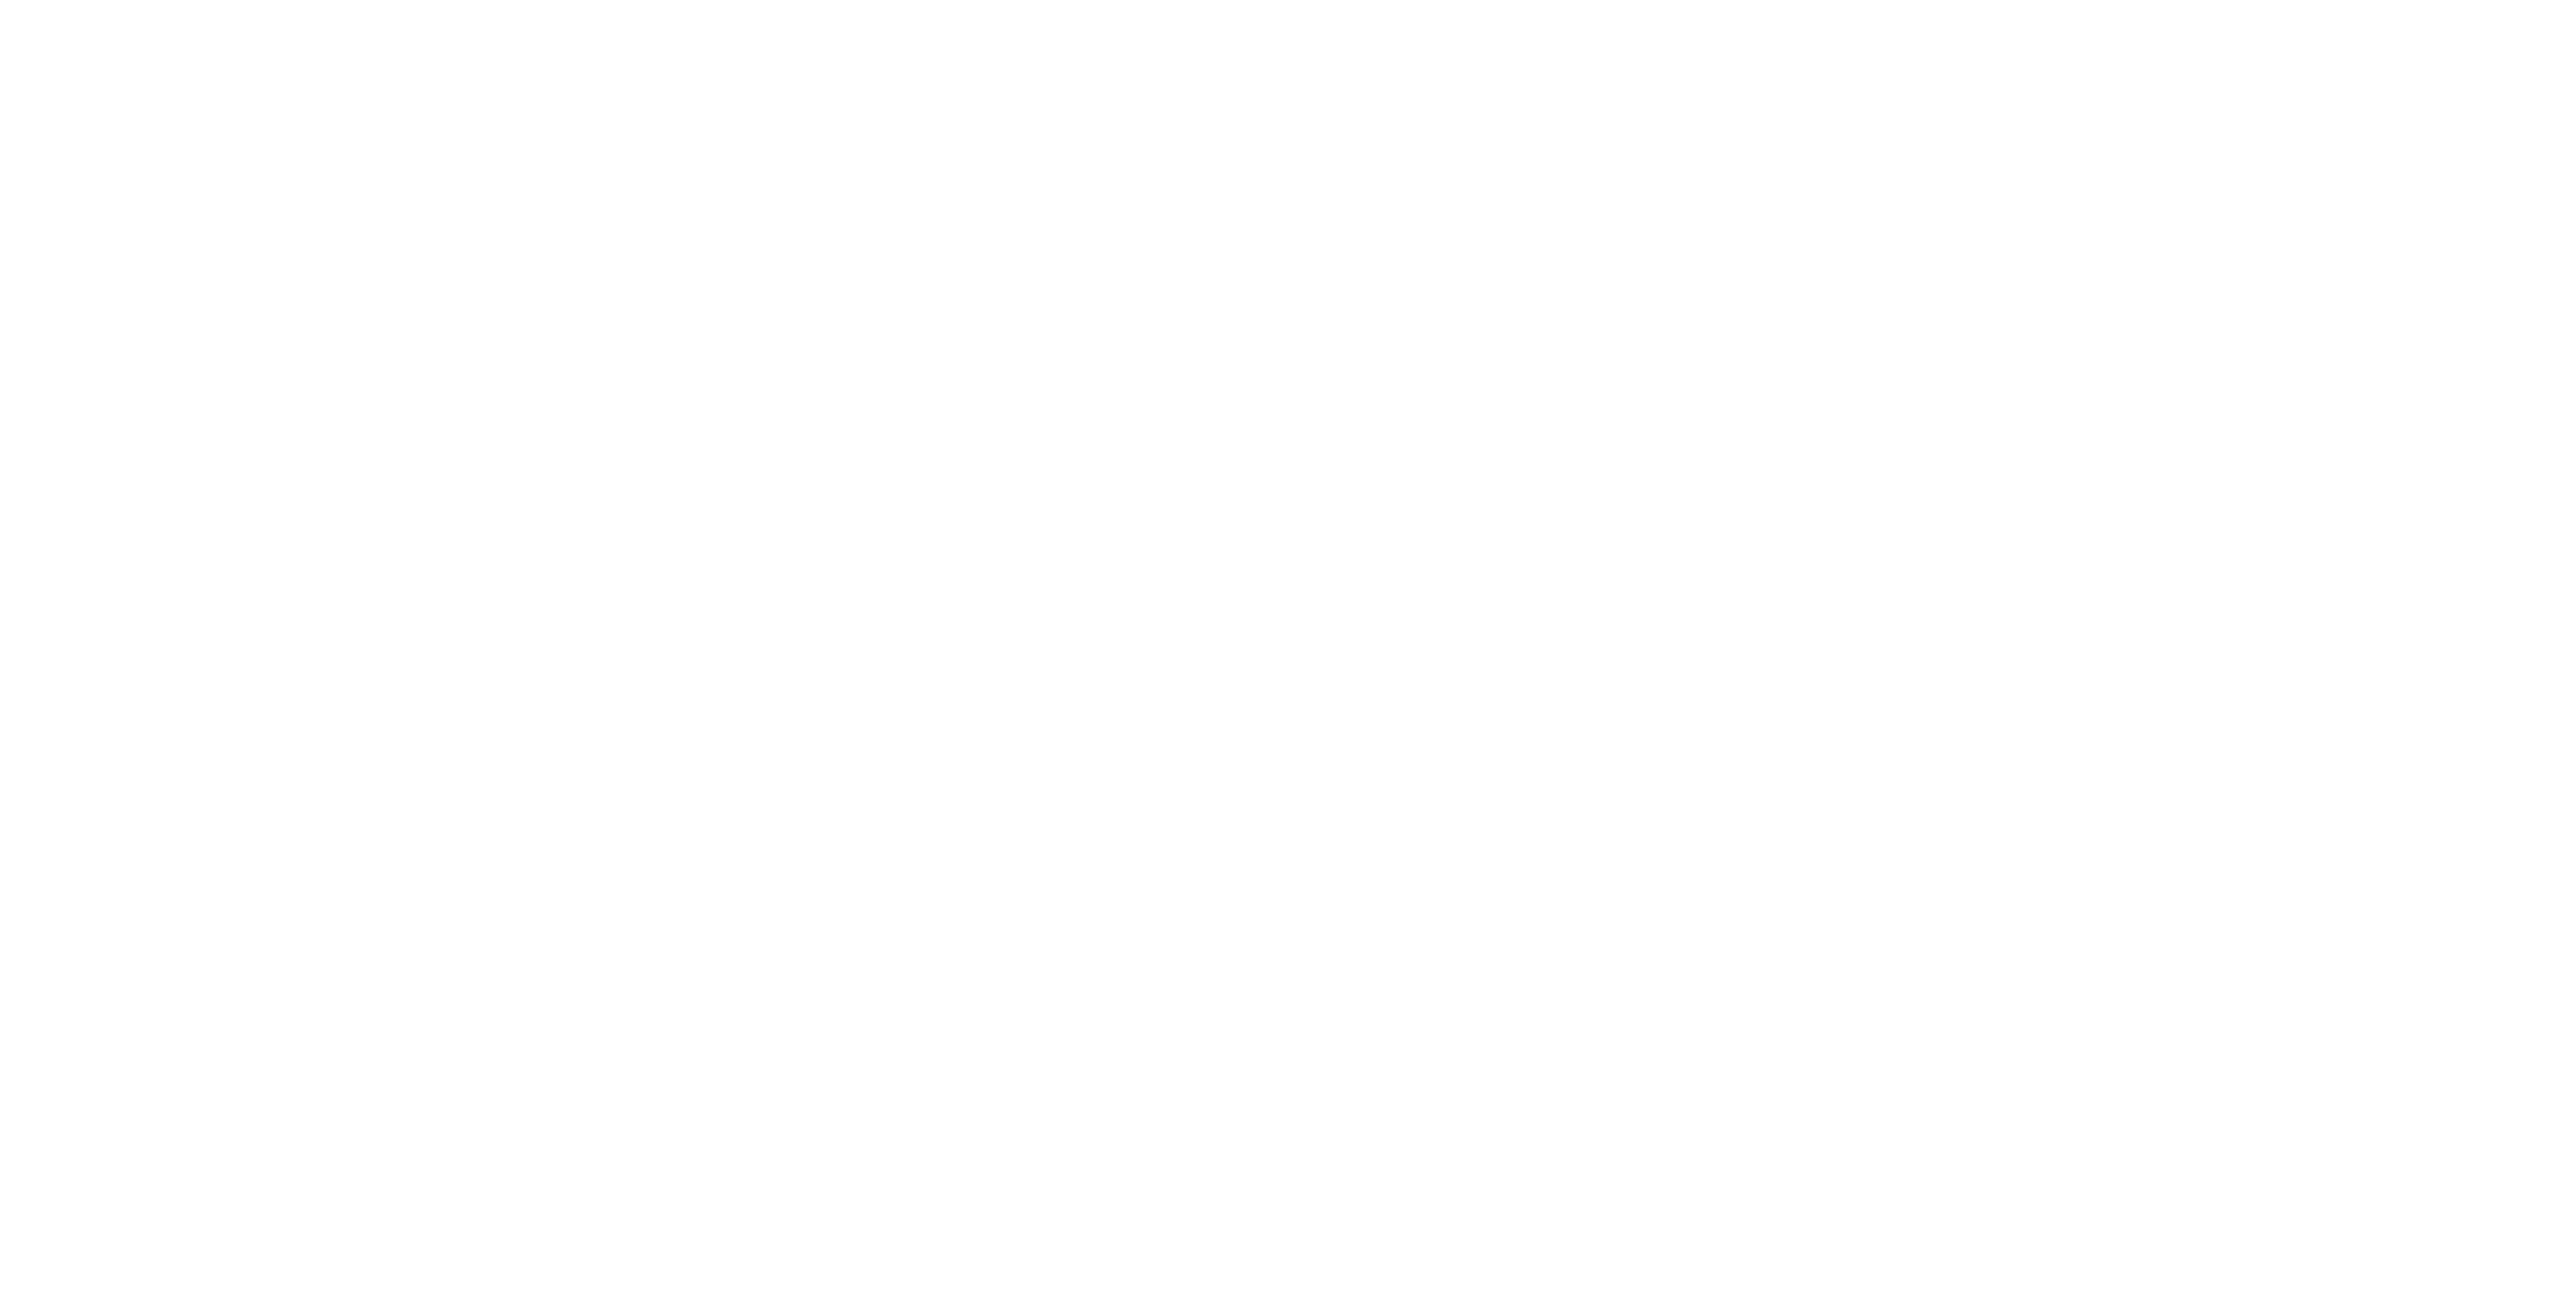 V-KLIC | Wij brengen uw bedrijf verder